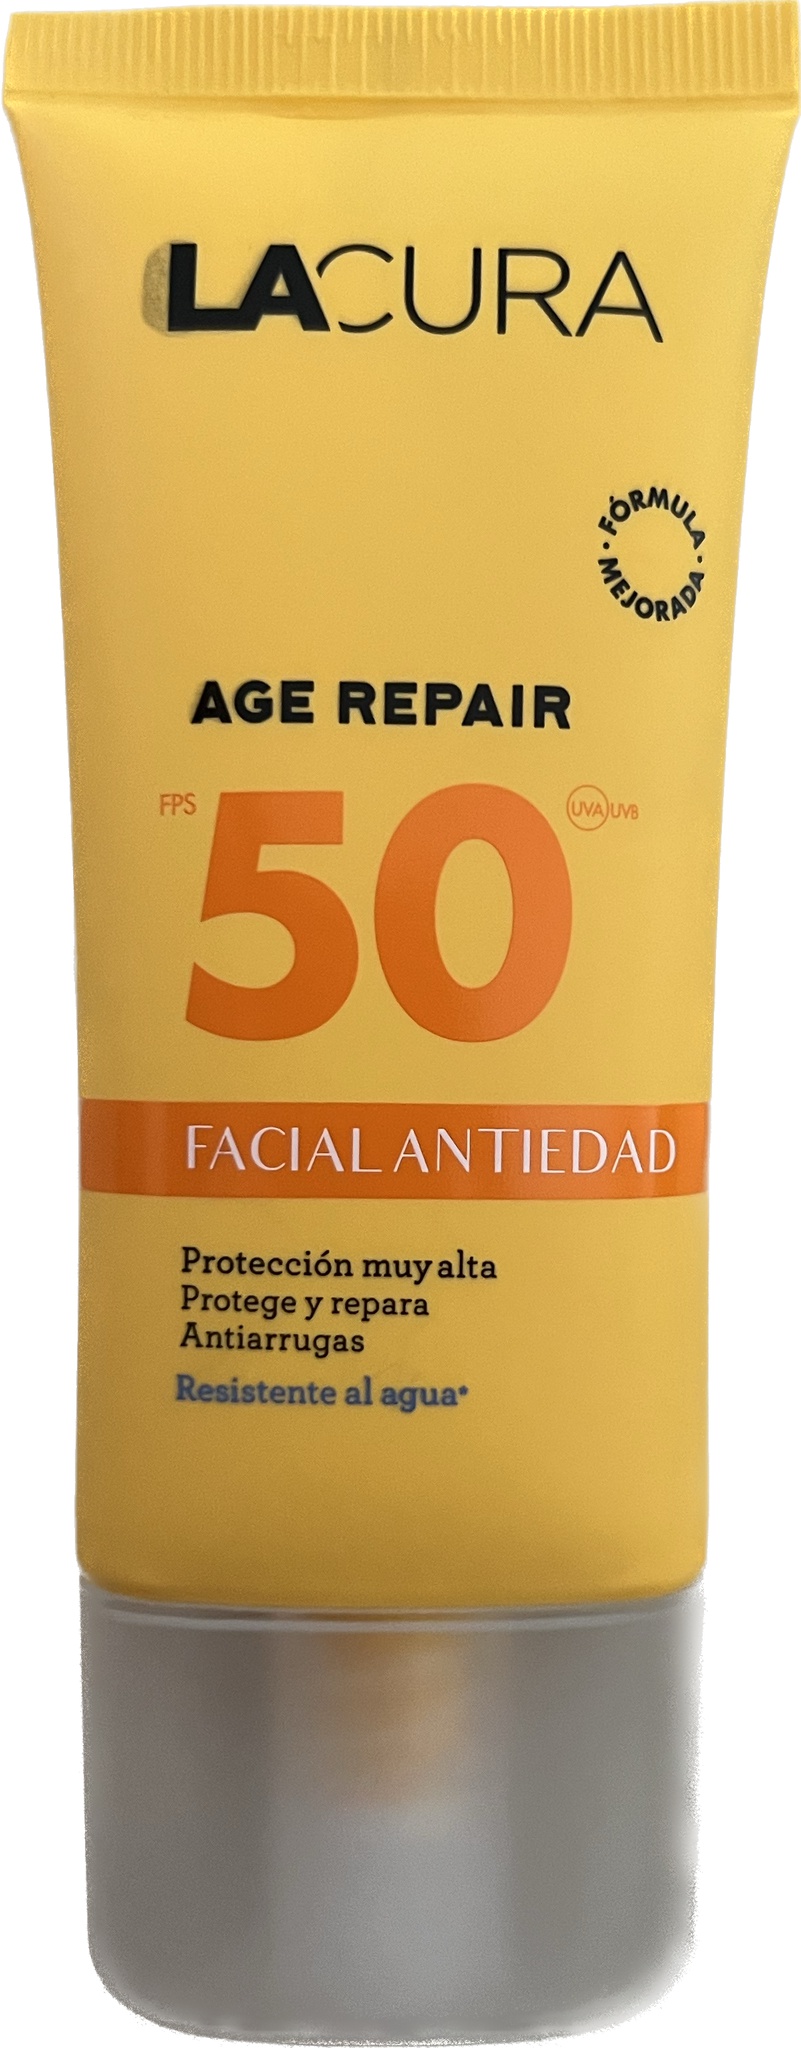 LACURA Age Repair Facial Antiedad SPF 50+